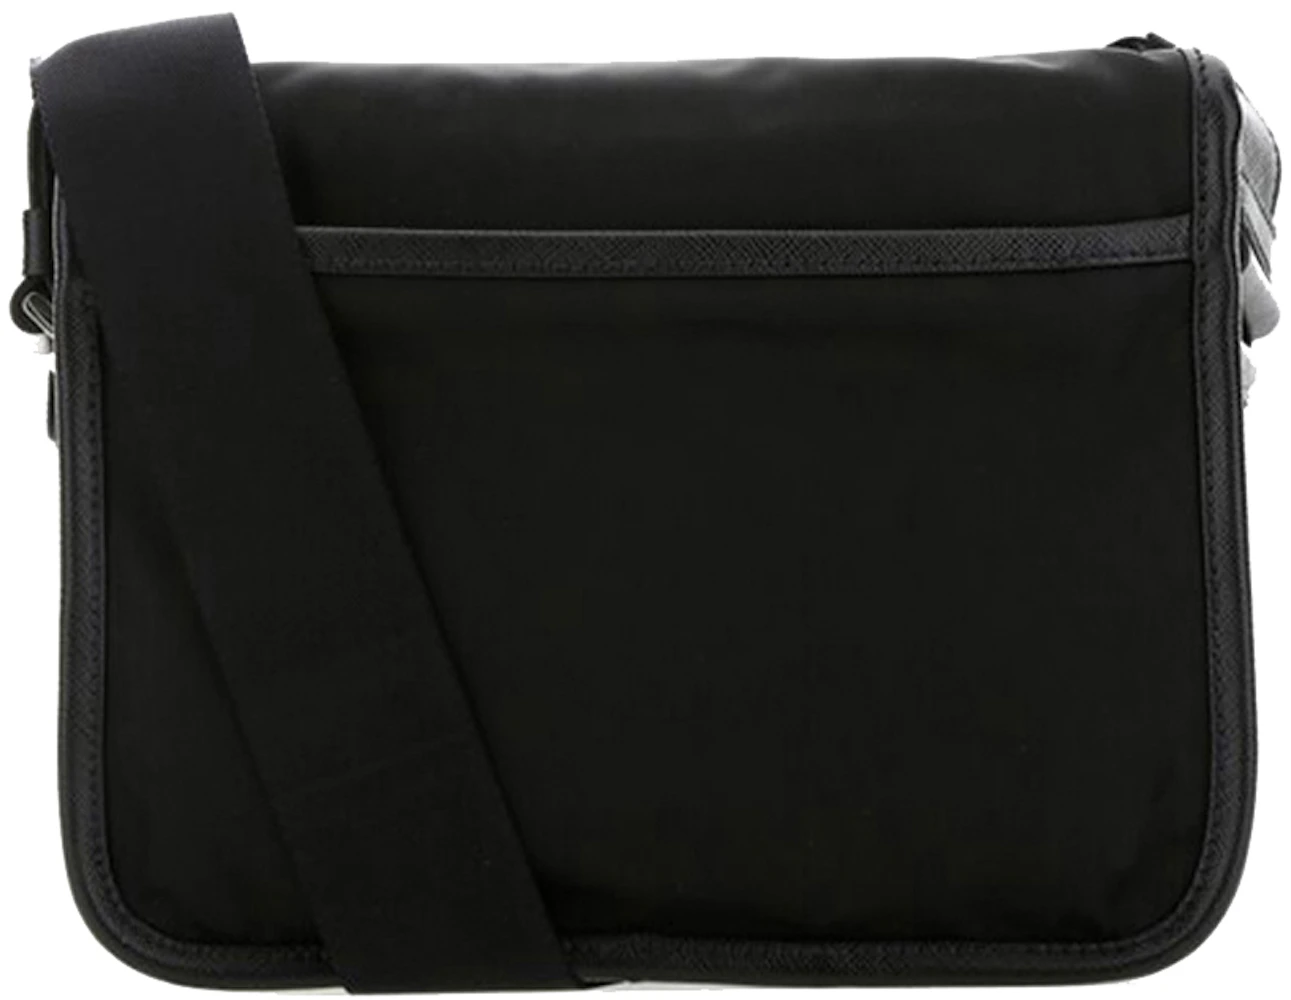 Re-Nylon shoulder bag in black - Prada